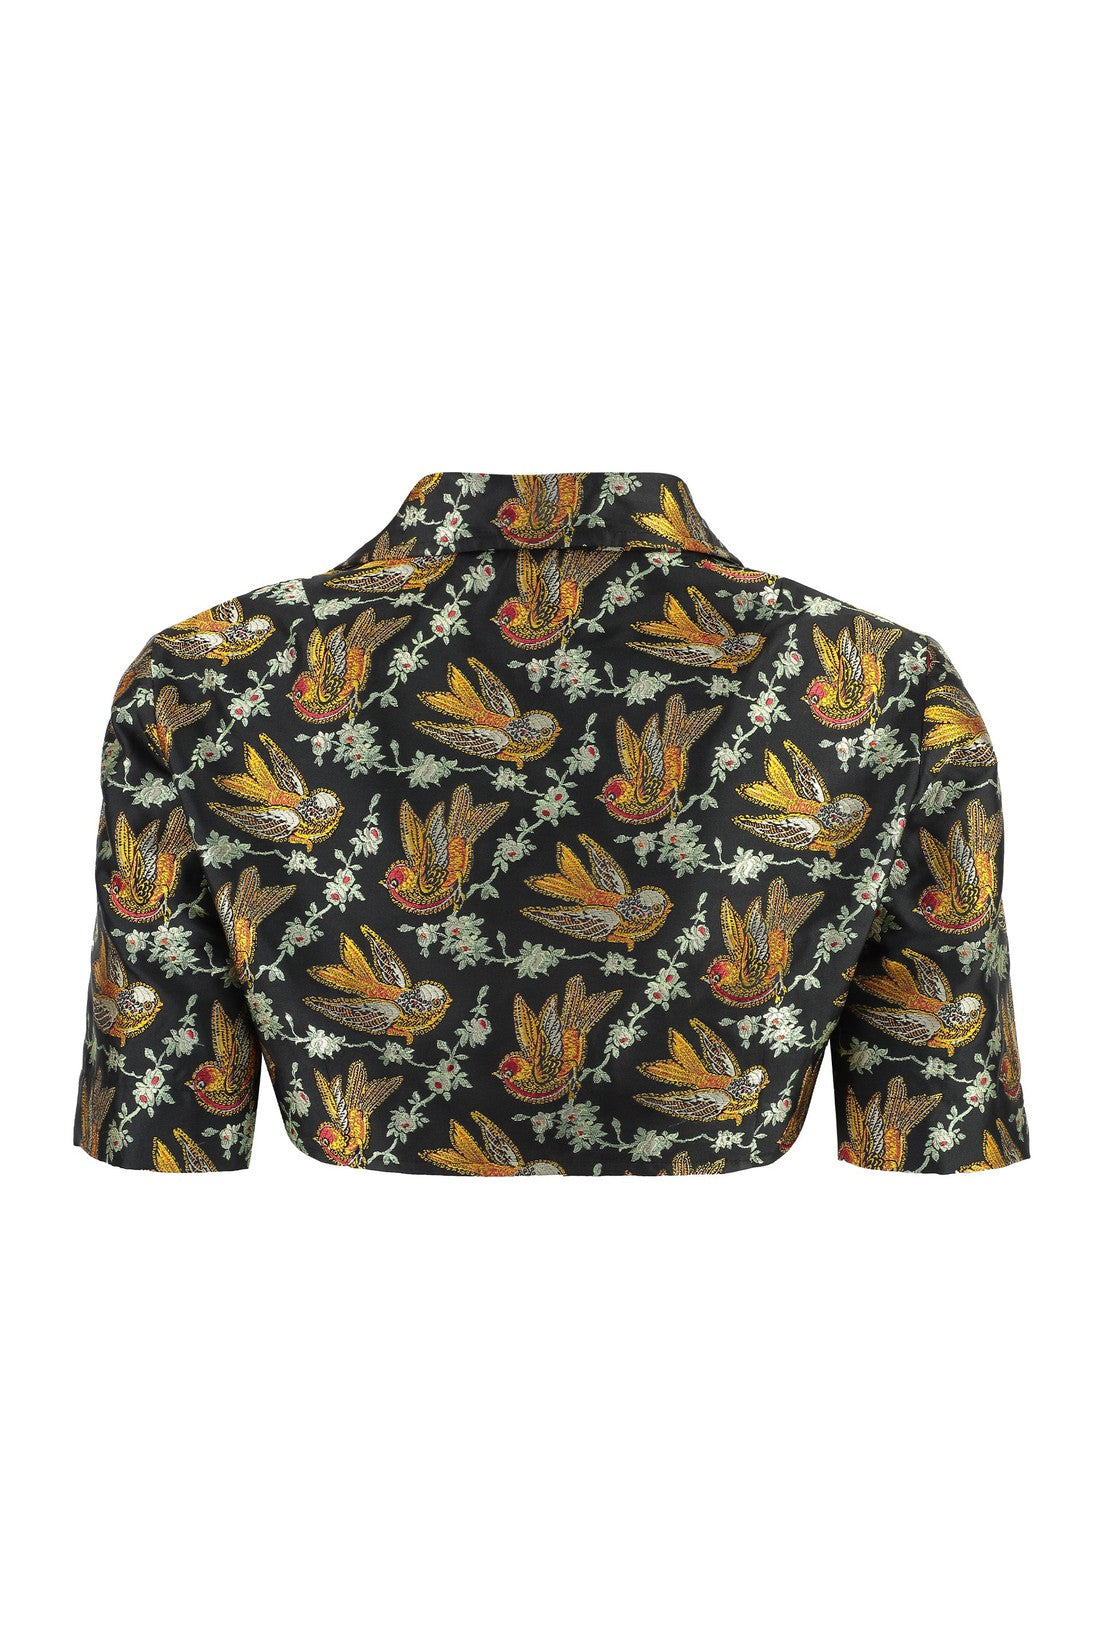 Etro-OUTLET-SALE-Cropped shirt-ARCHIVIST